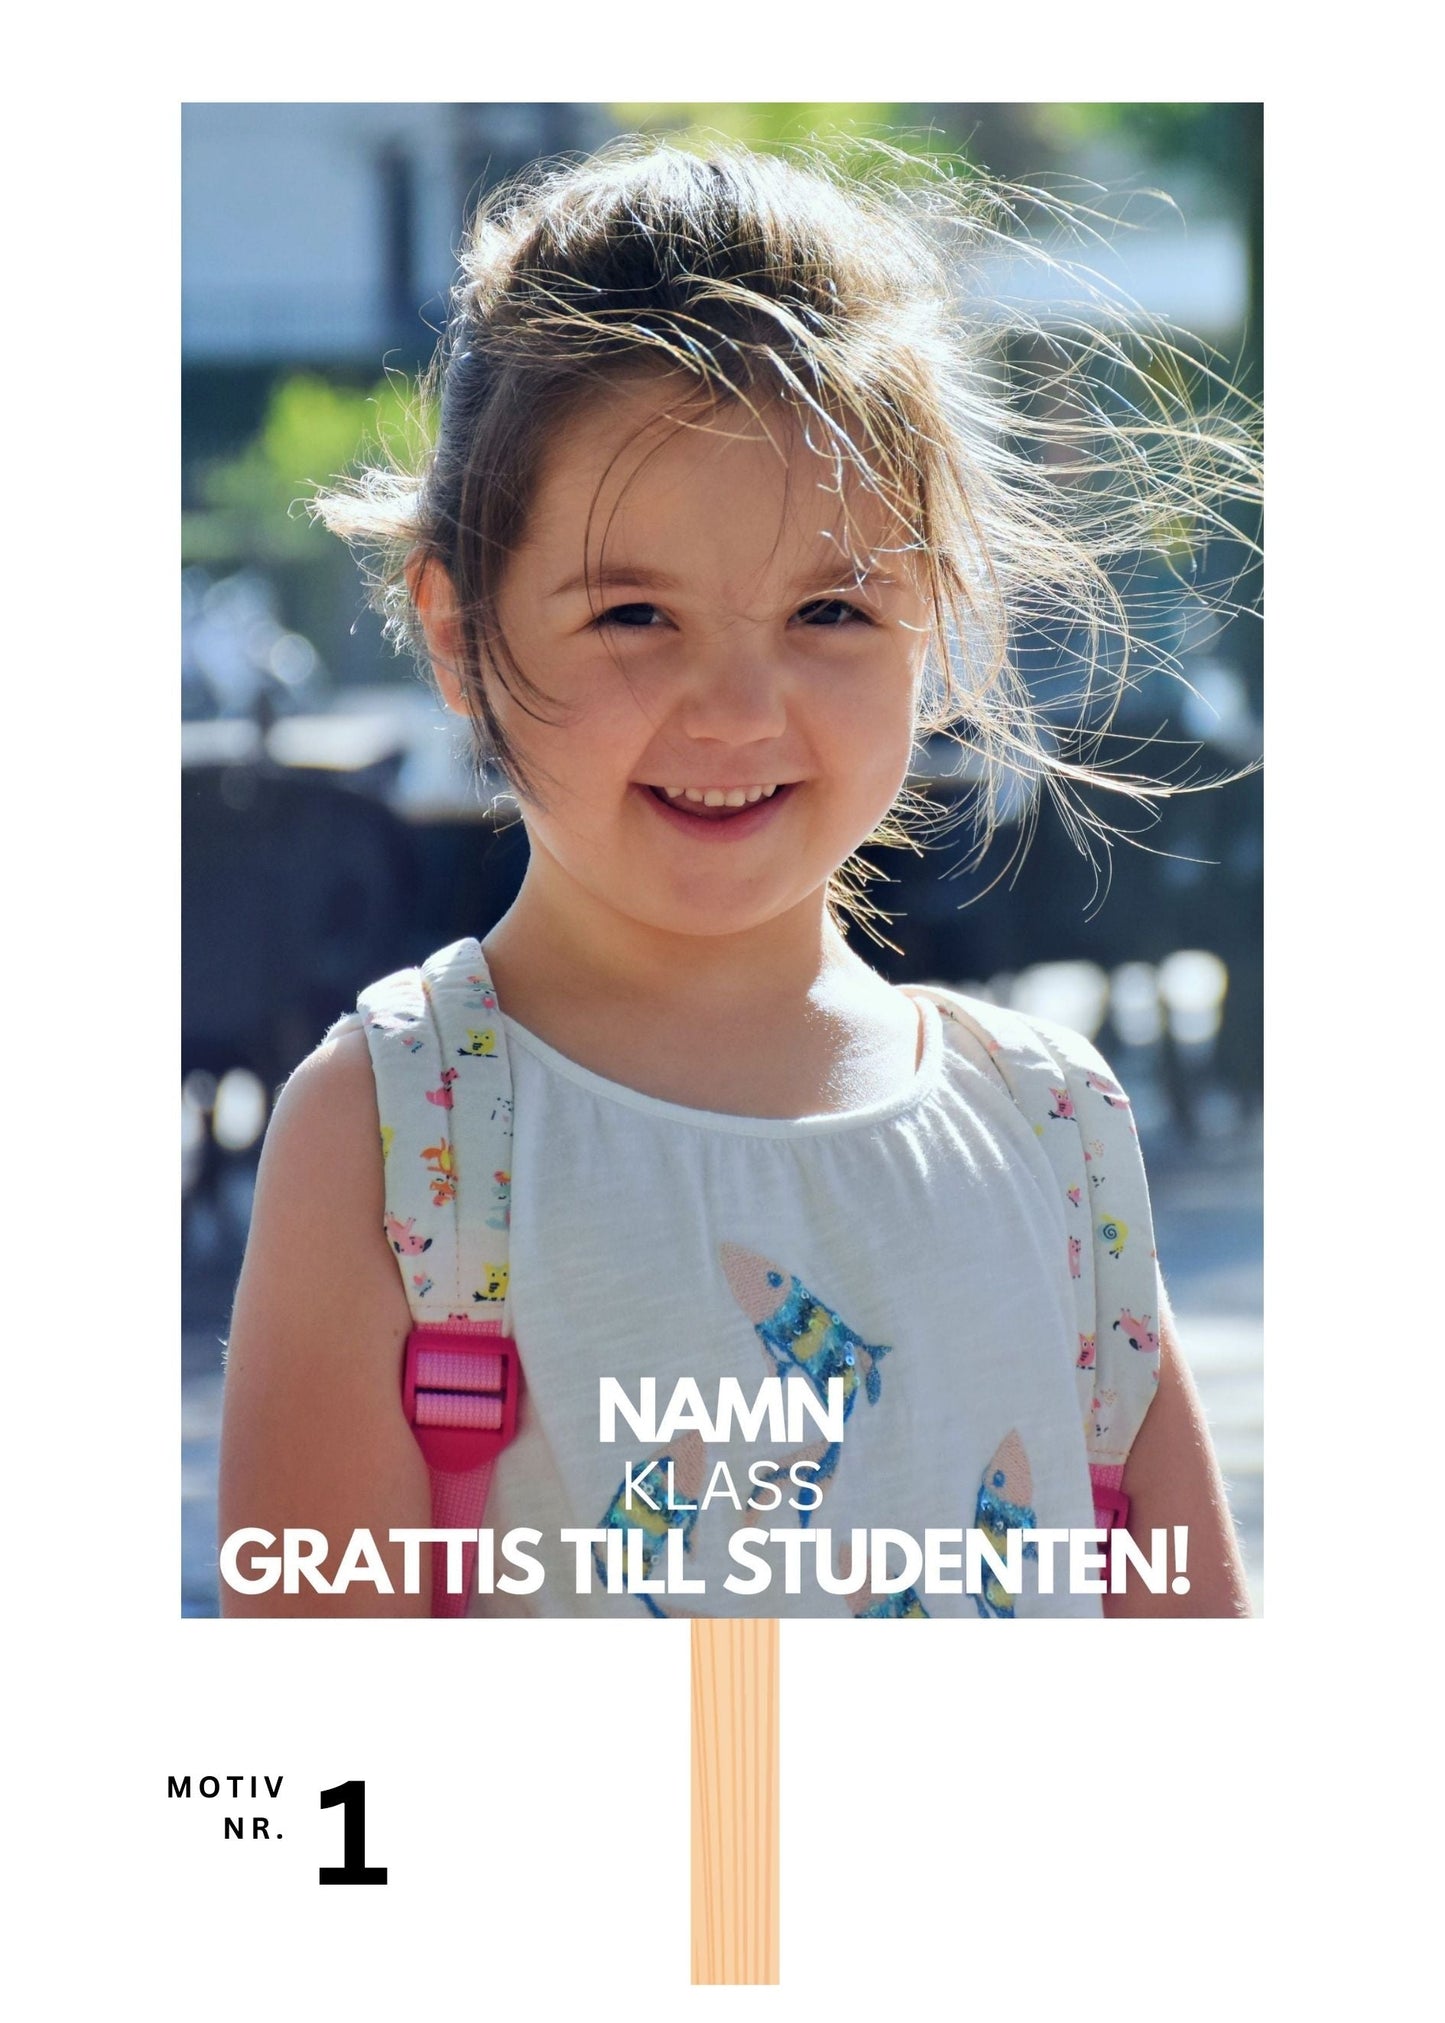 Studentskylt och studentplakat i Kristianstad